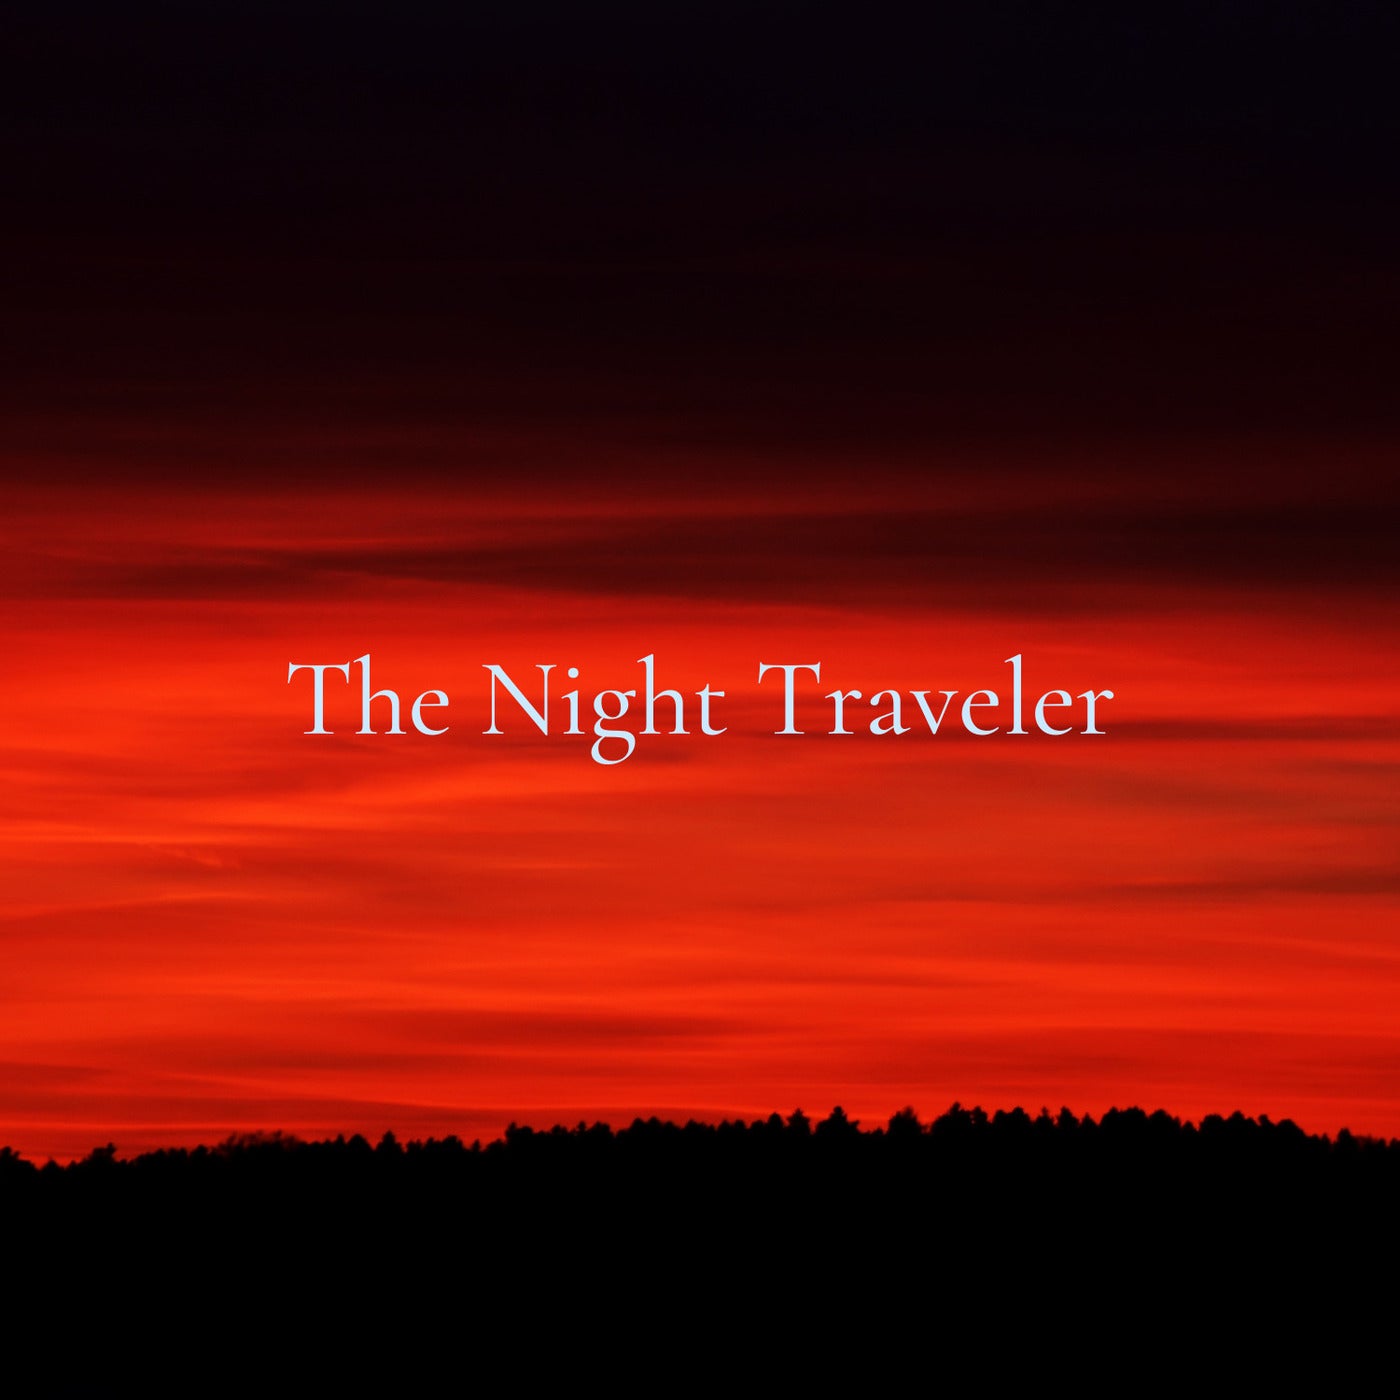 The Night Traveler